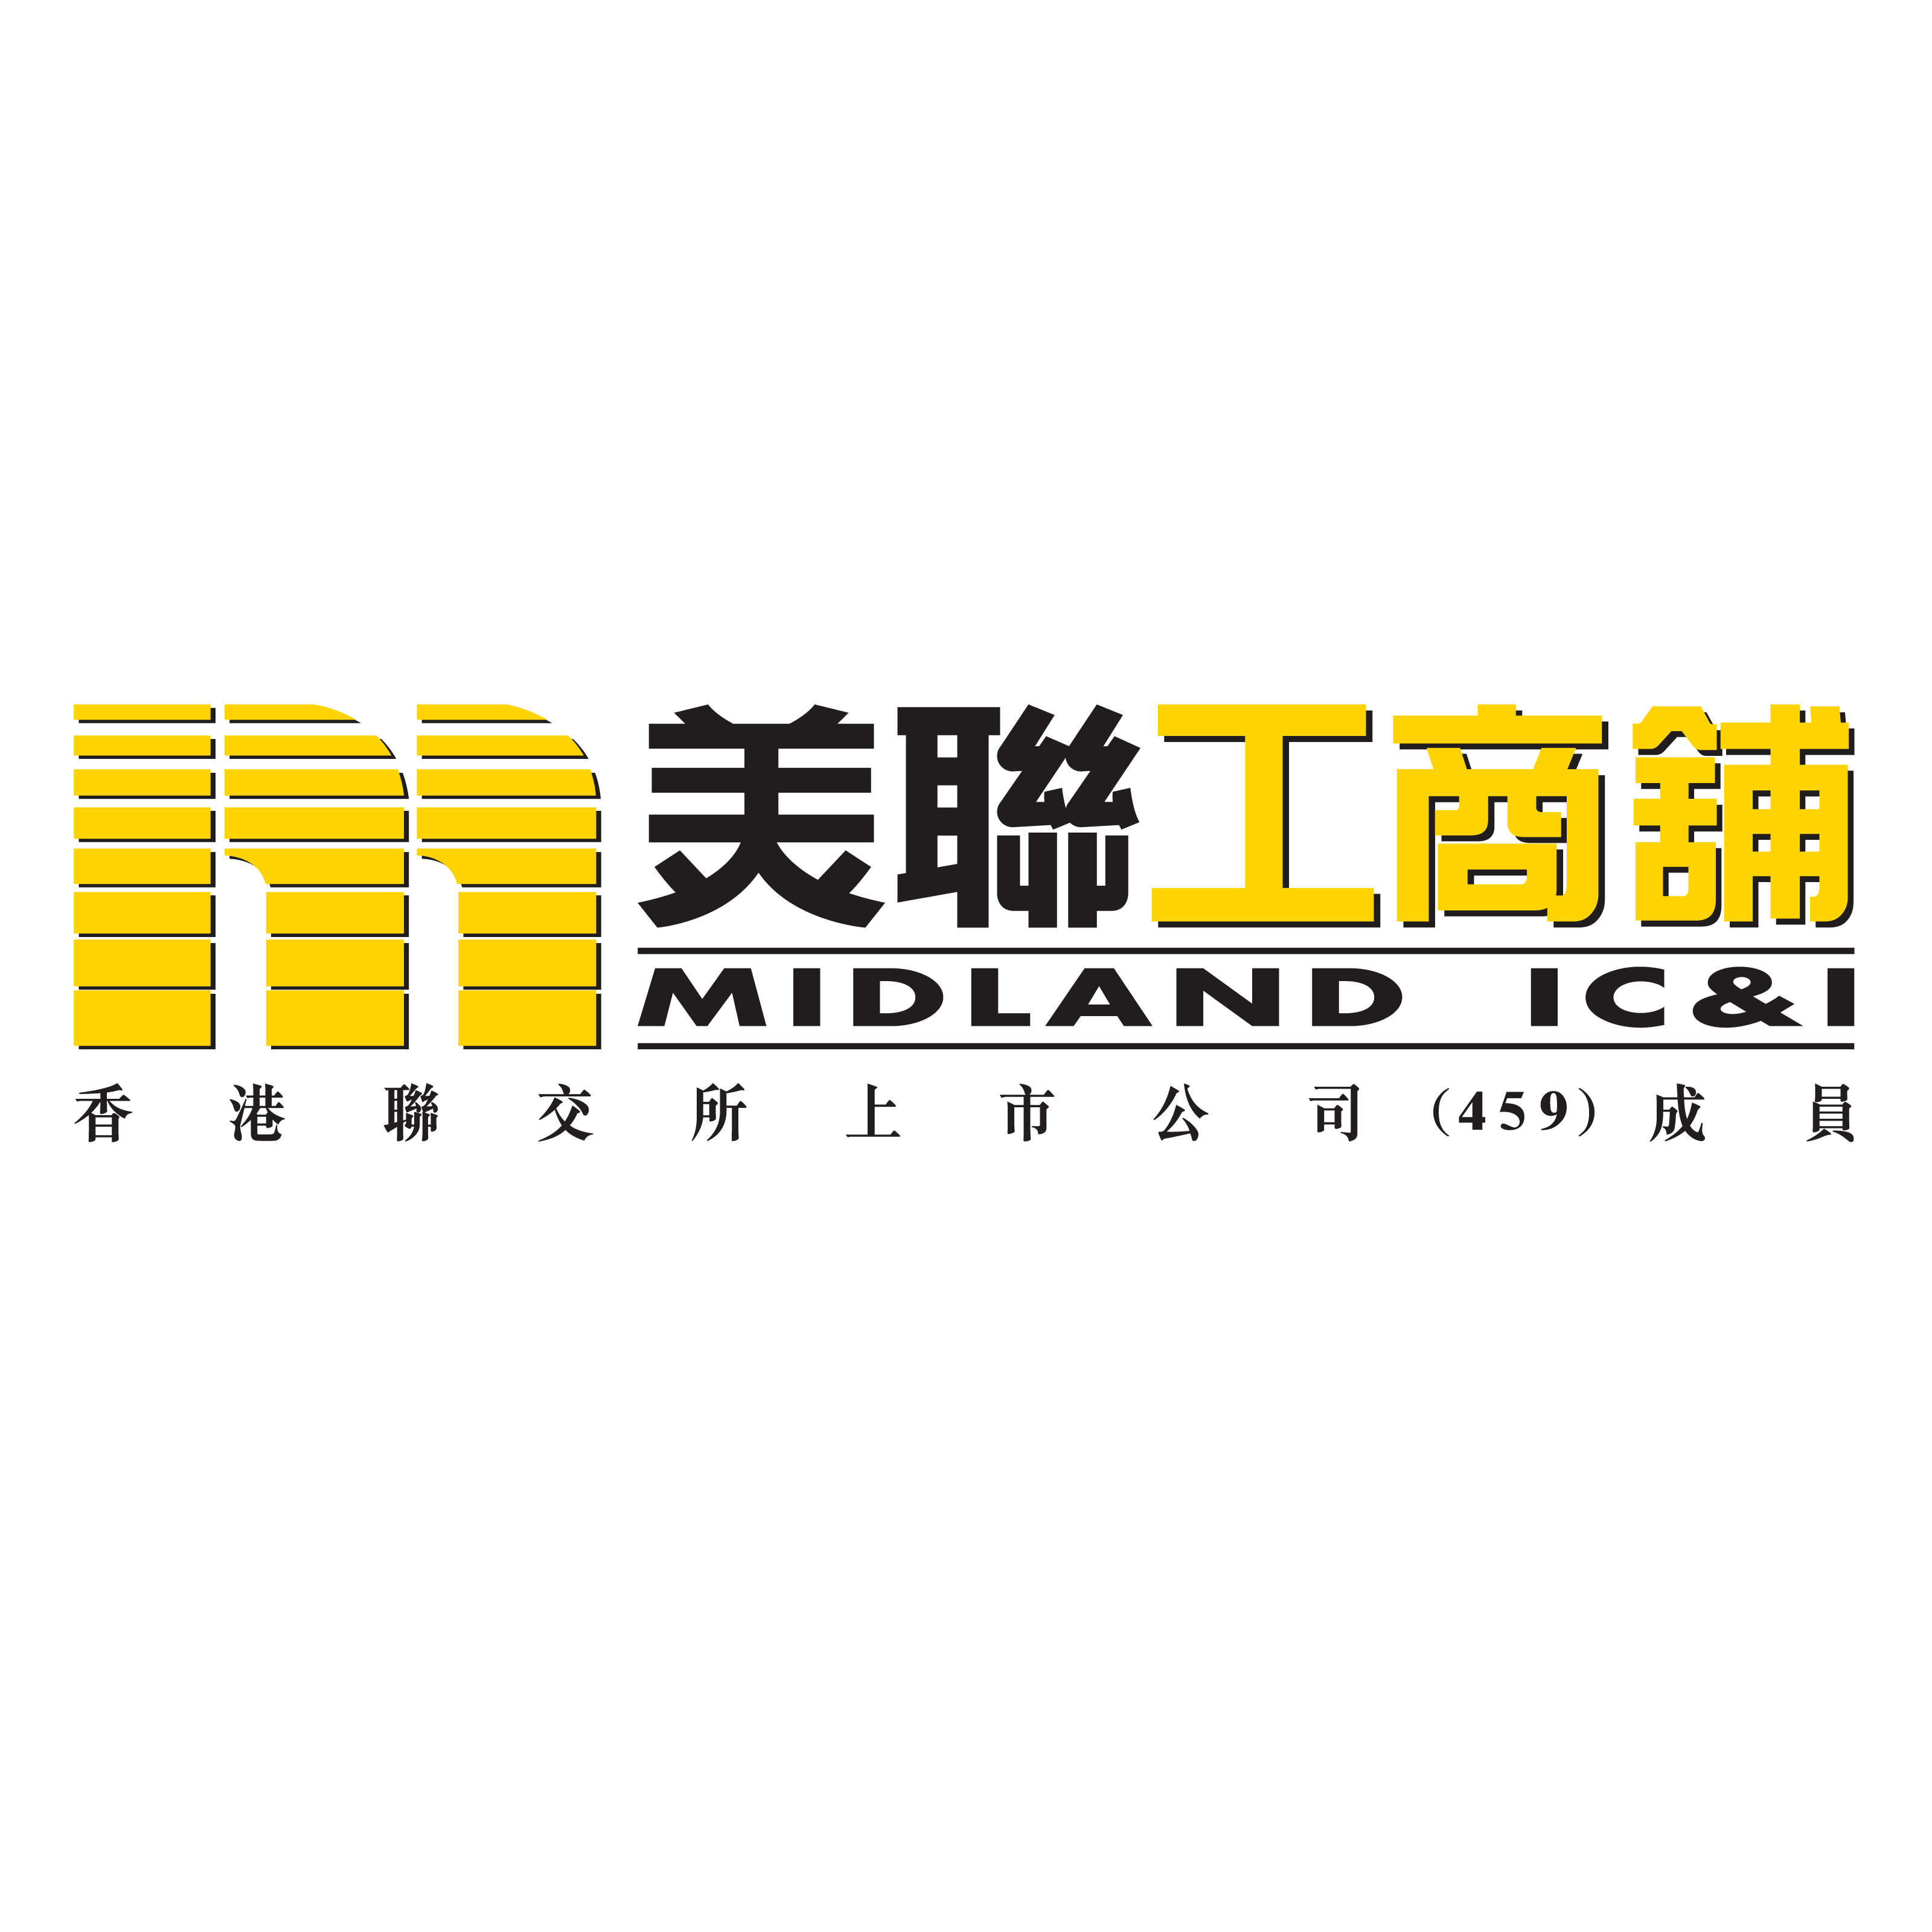 Midland IC&I